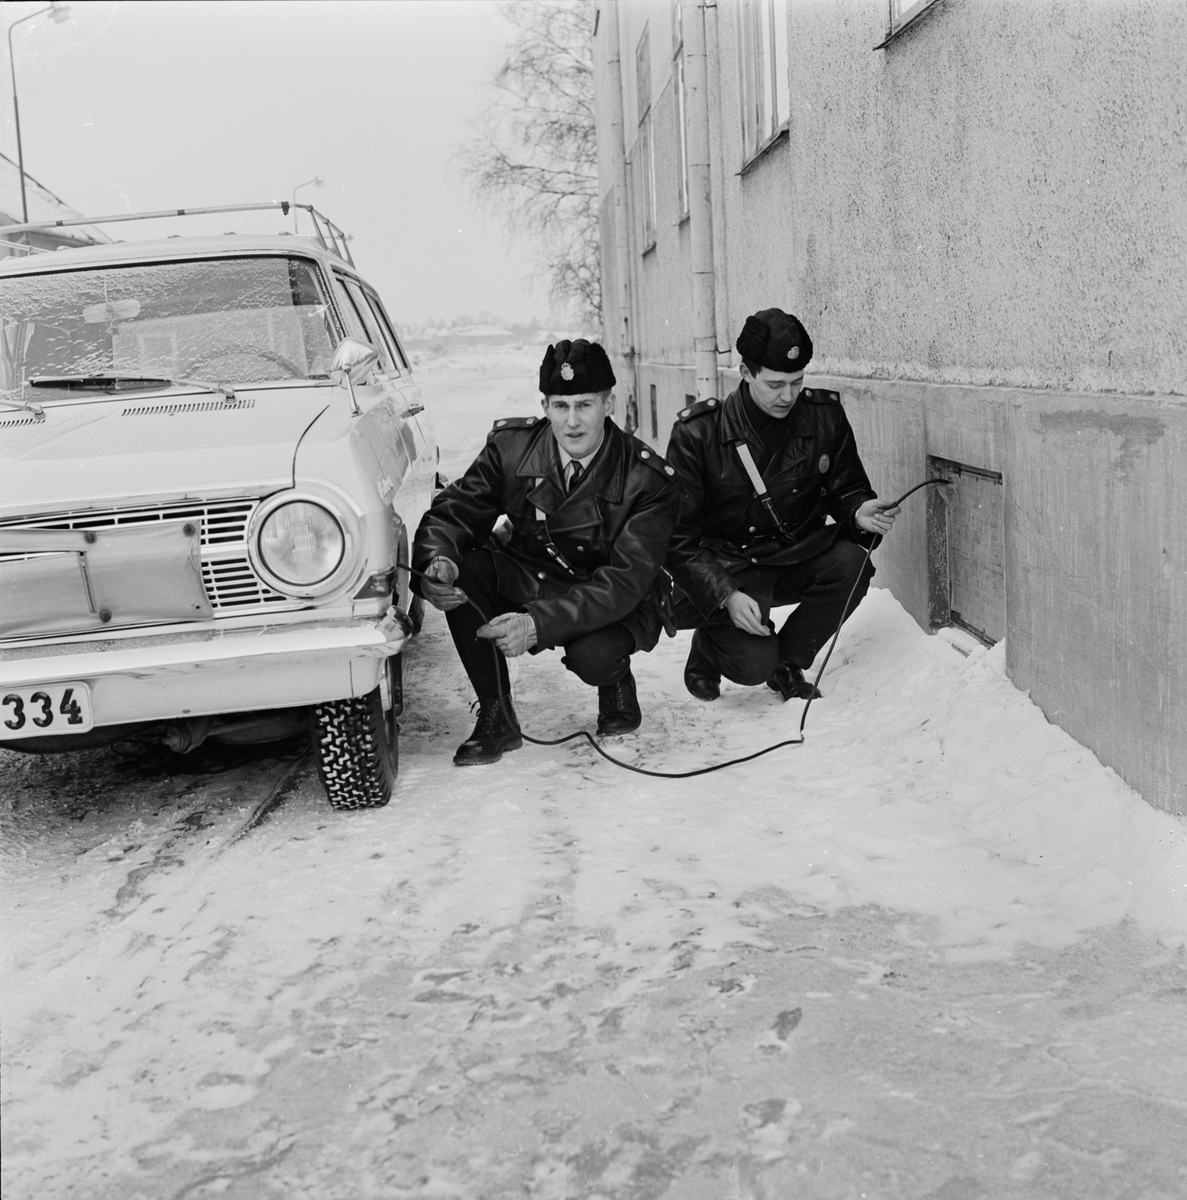 Polis - "motorvärmare måste handhas med förstånd", Uppsala 1966